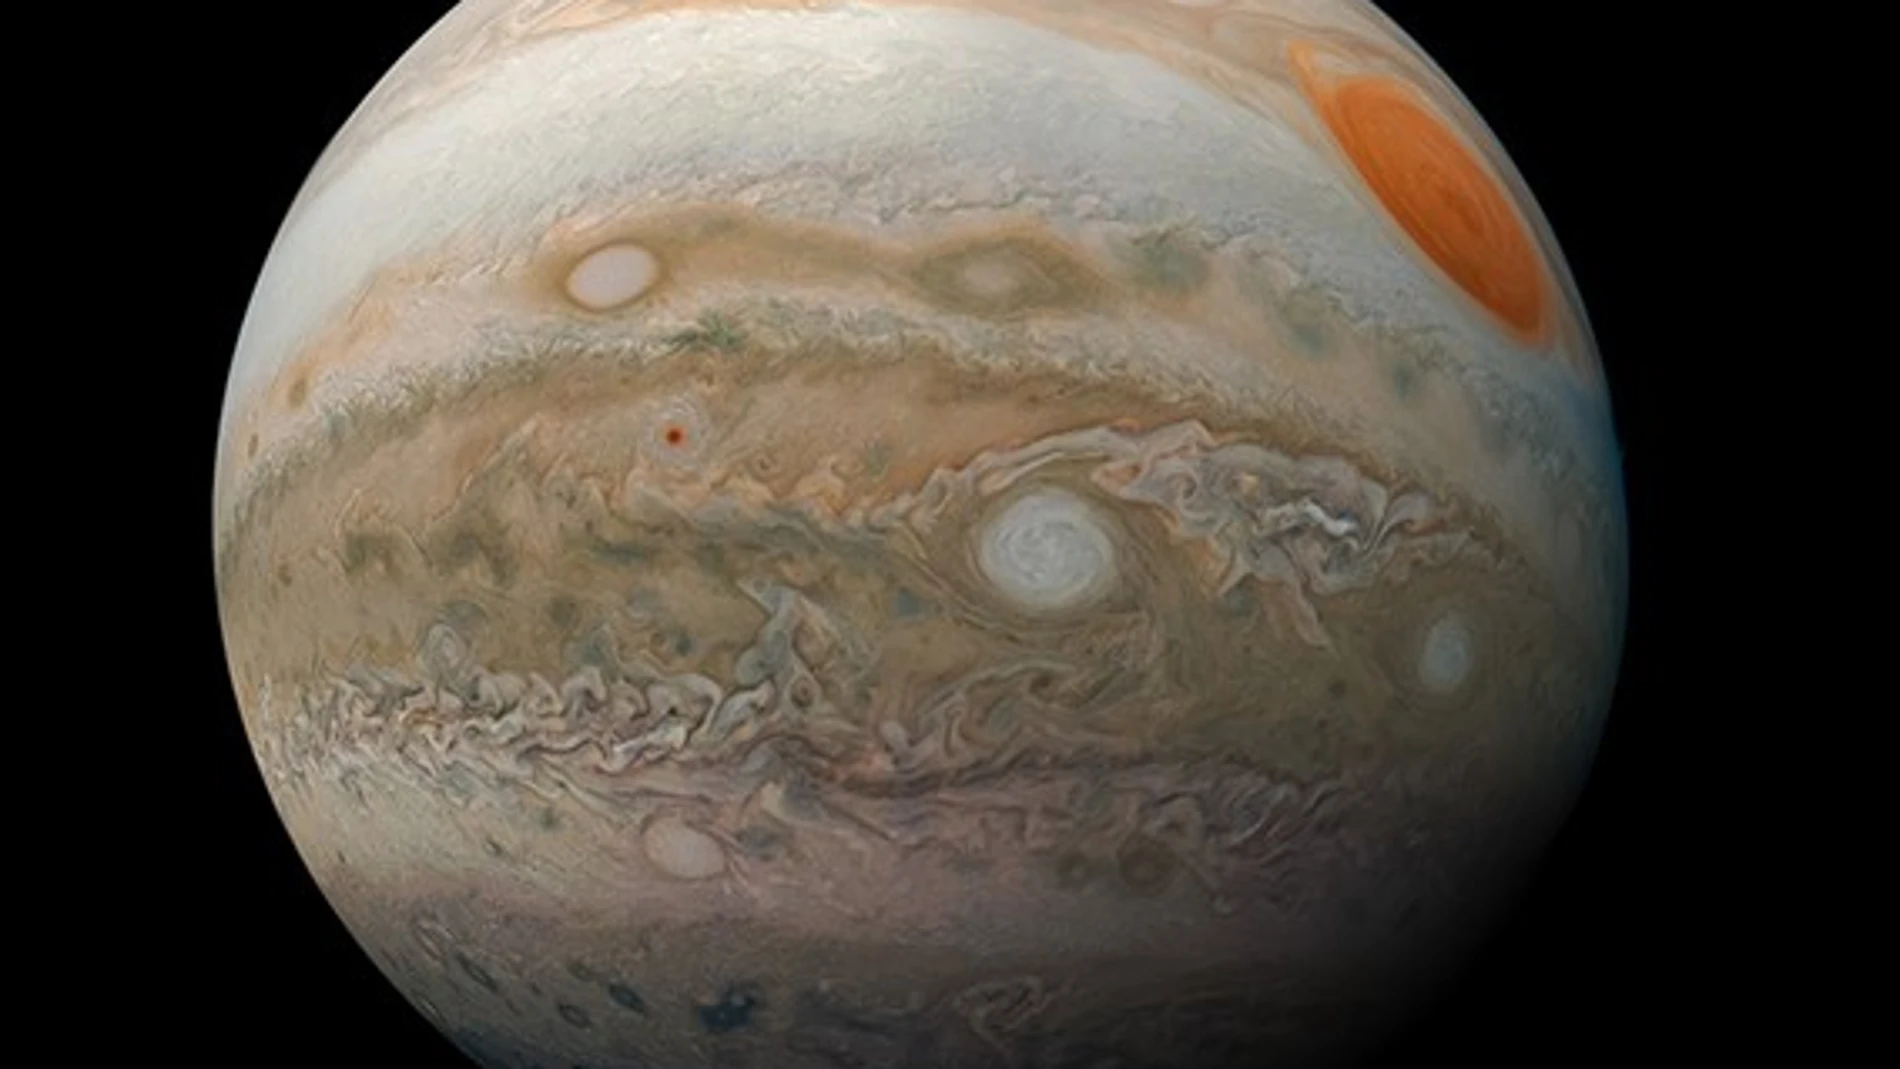 Fotografía de Júpiter tomada por Juno el 12 de febrero de 2019